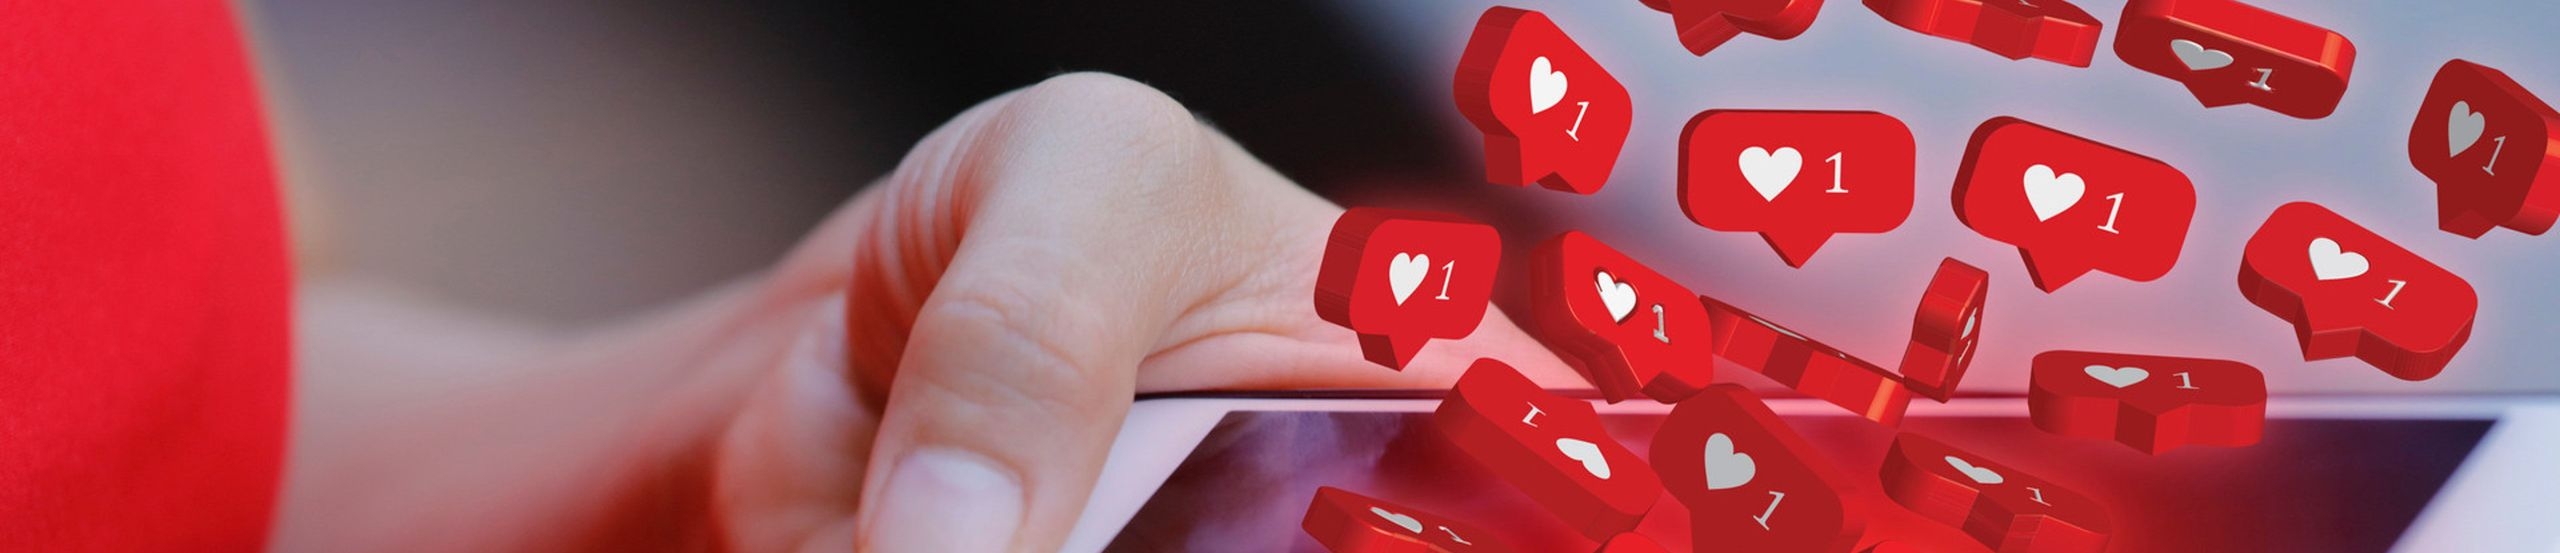 Eine junge Frau schaut auf ihr Smartphone aus dem Instagram-Herzen-Symbole hervorquellen.